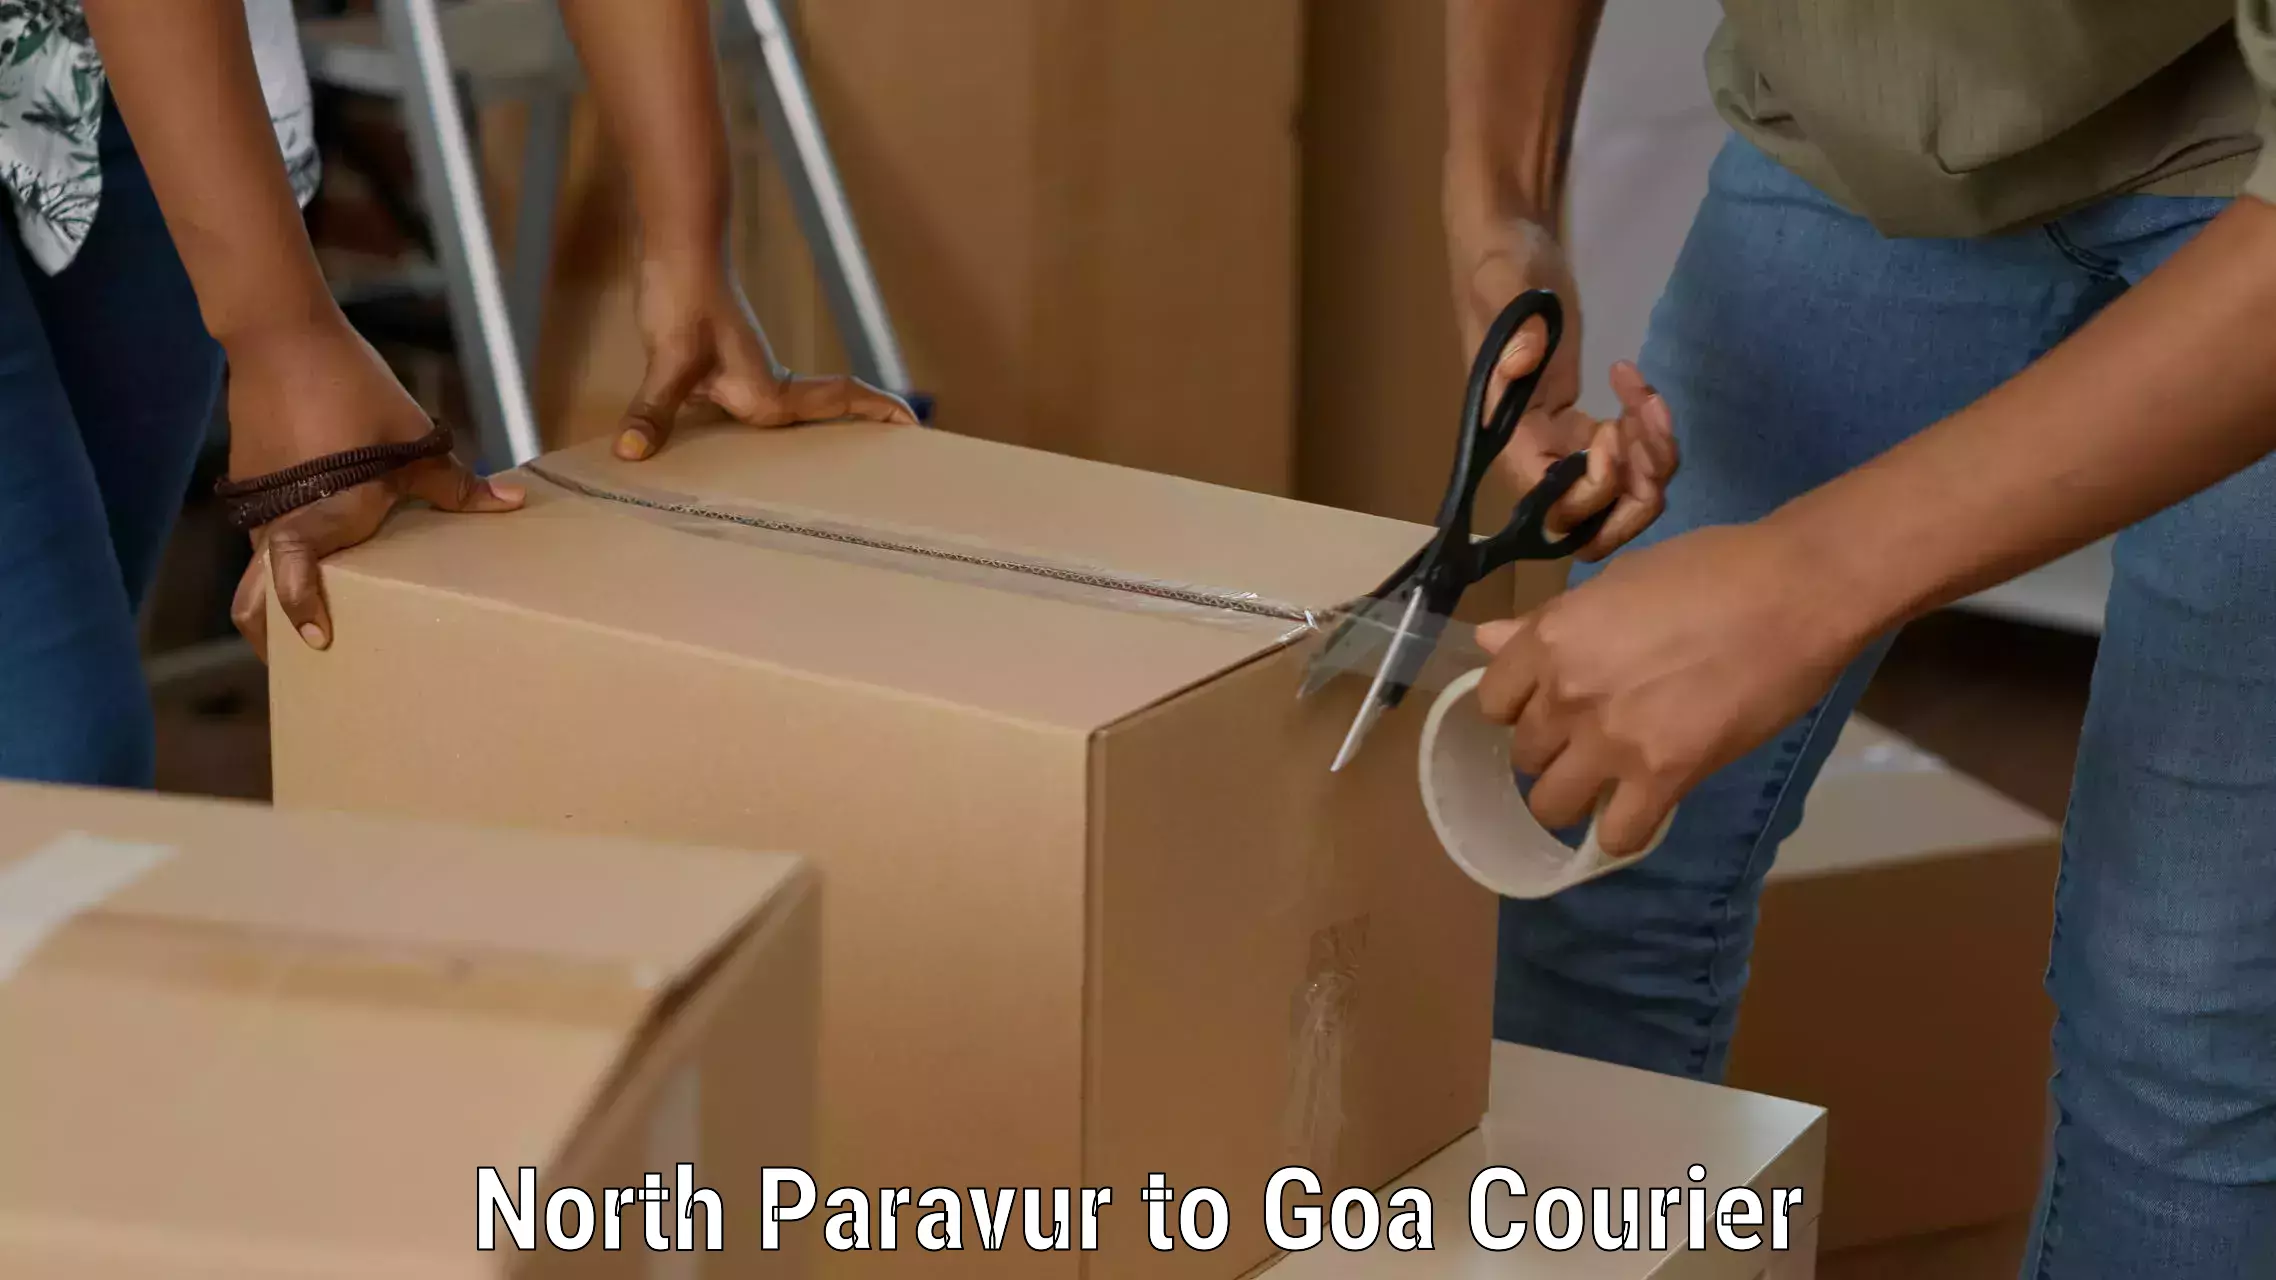 Remote area delivery North Paravur to Ponda